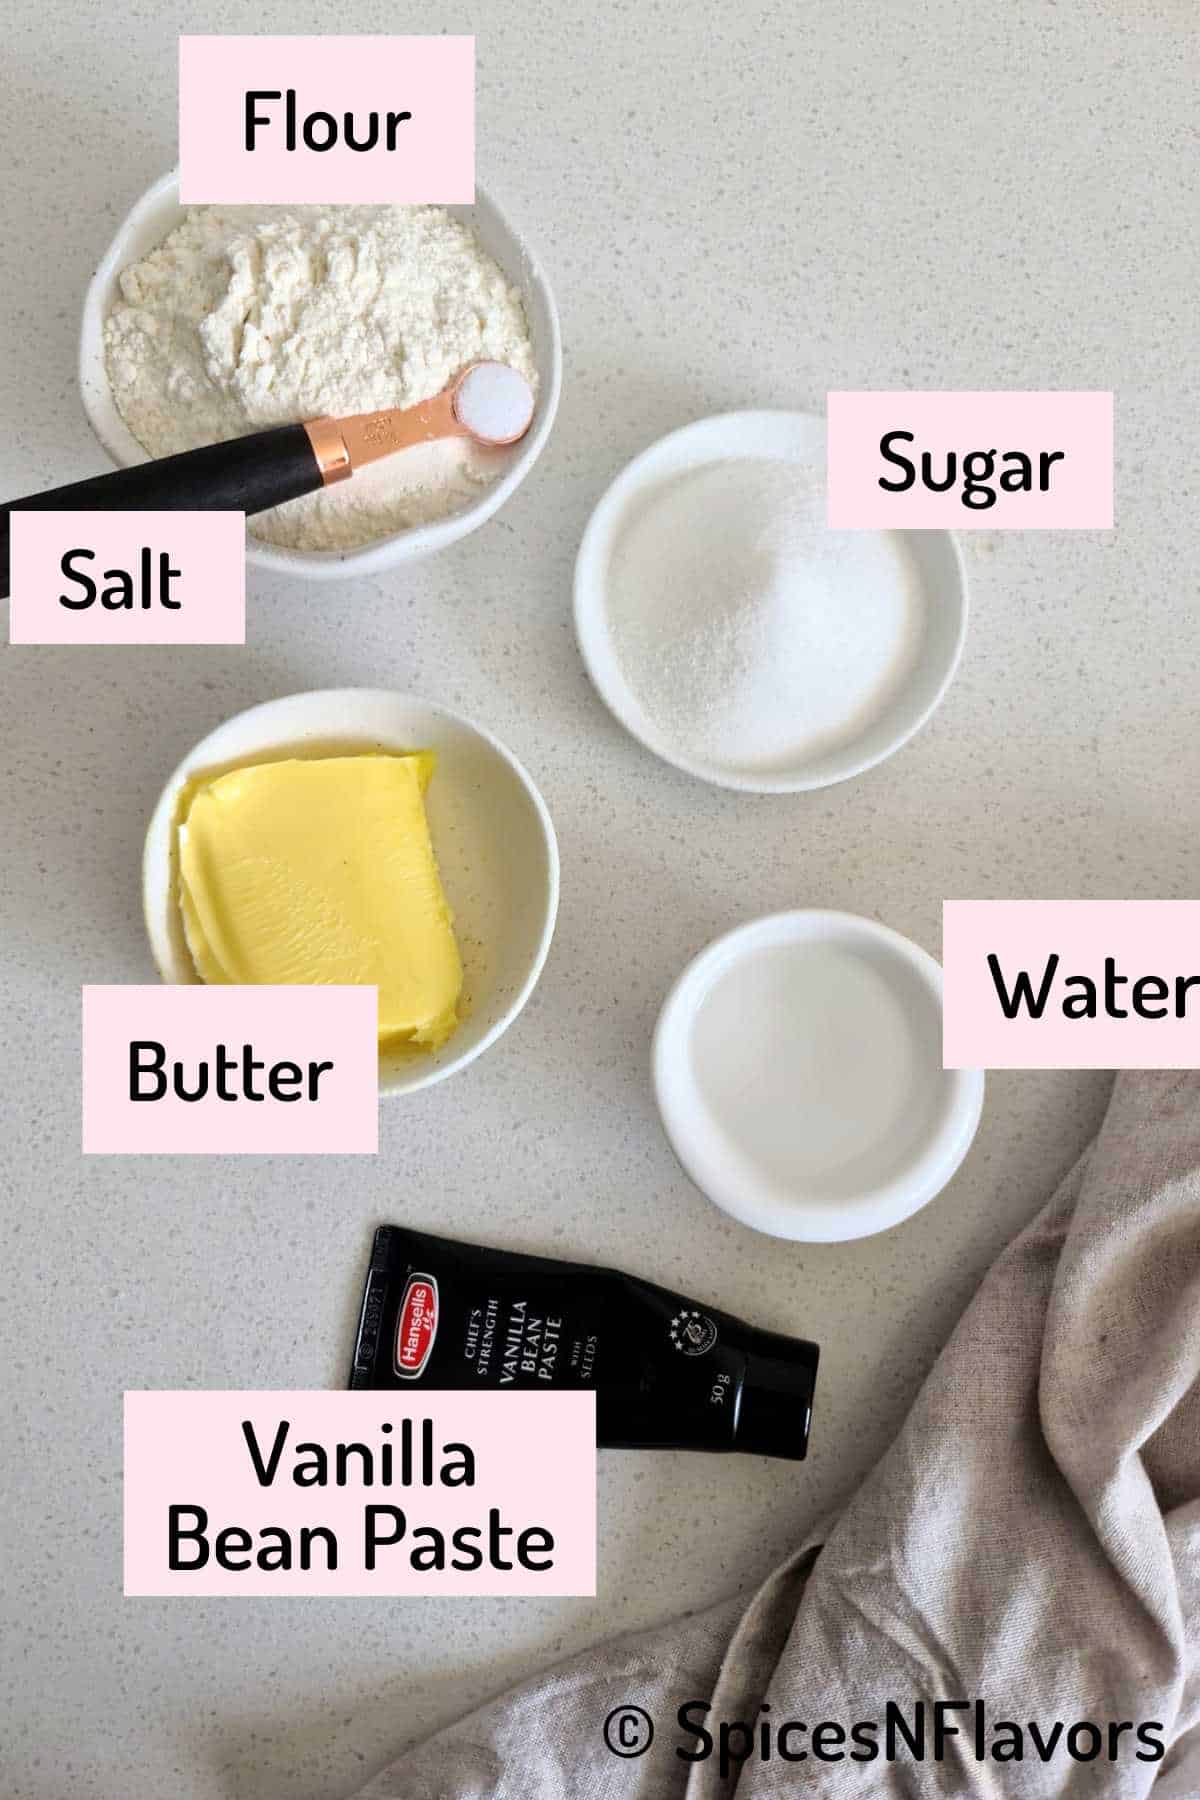 ingredients needed to make the sugar cookies